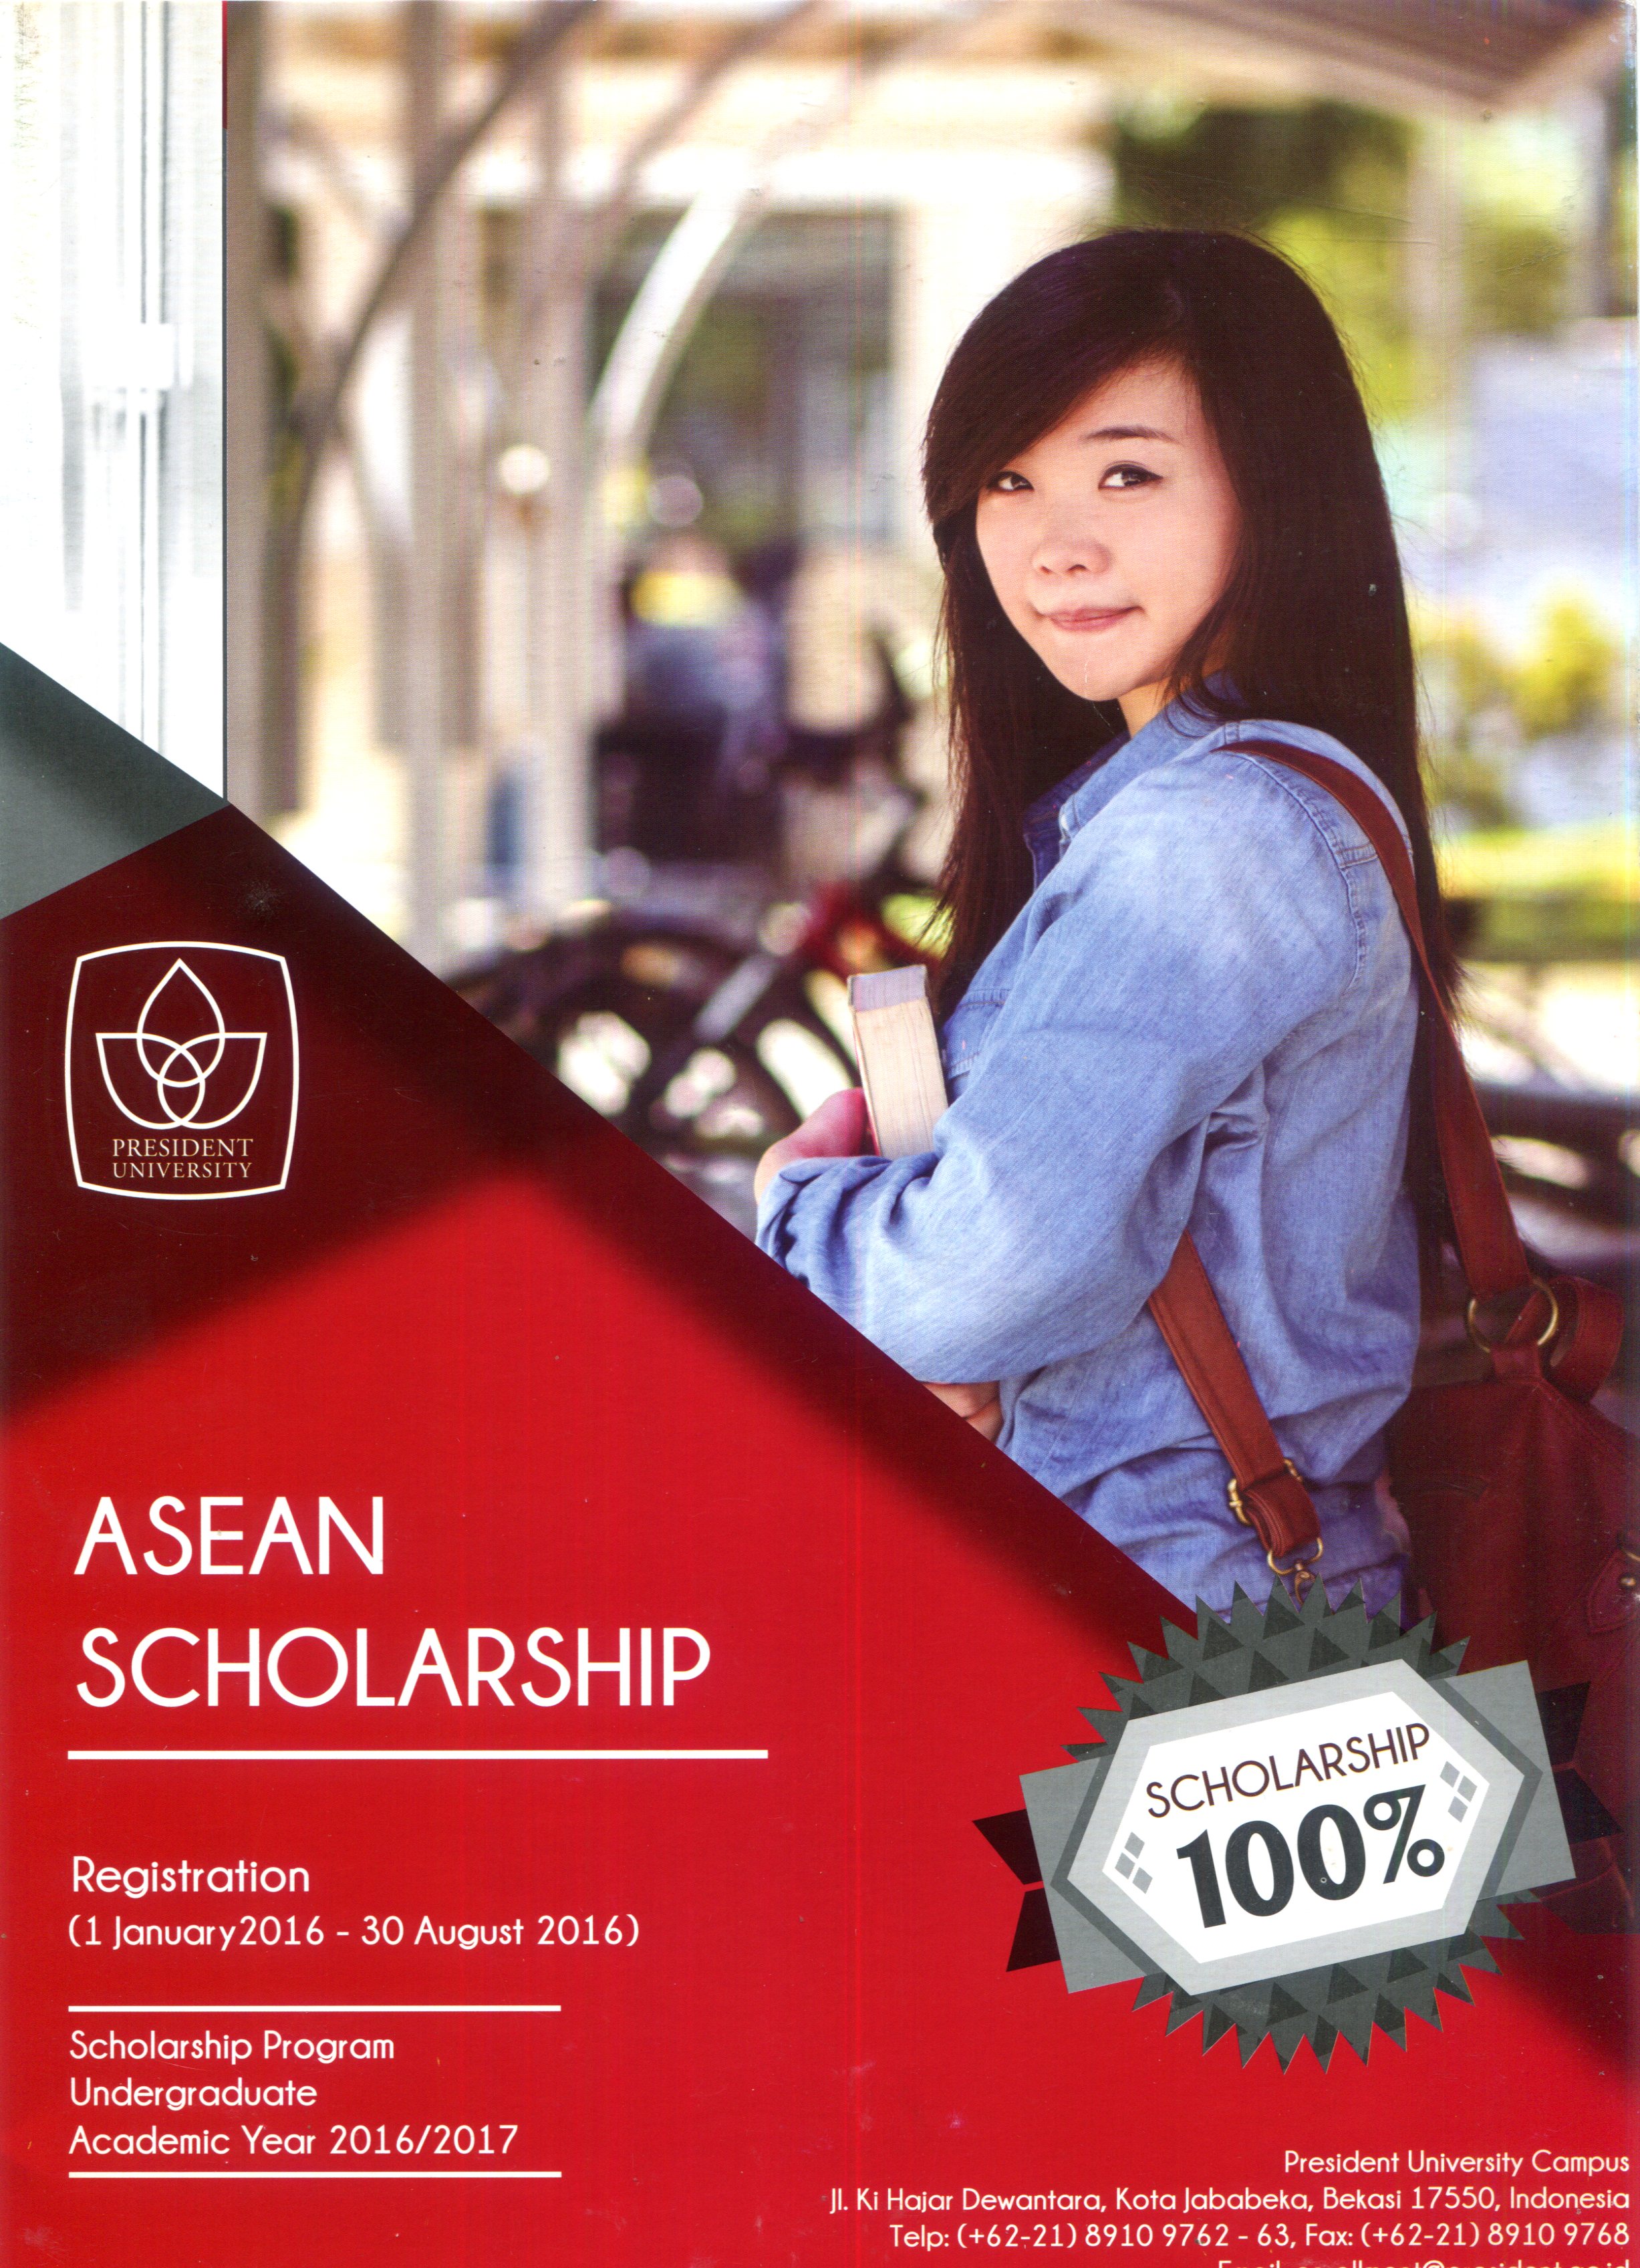 Trường Đại học Presdent cung cấp học bổng 100% học phí cho HSSV khu vực Đông Nam Á (hạn cuối...